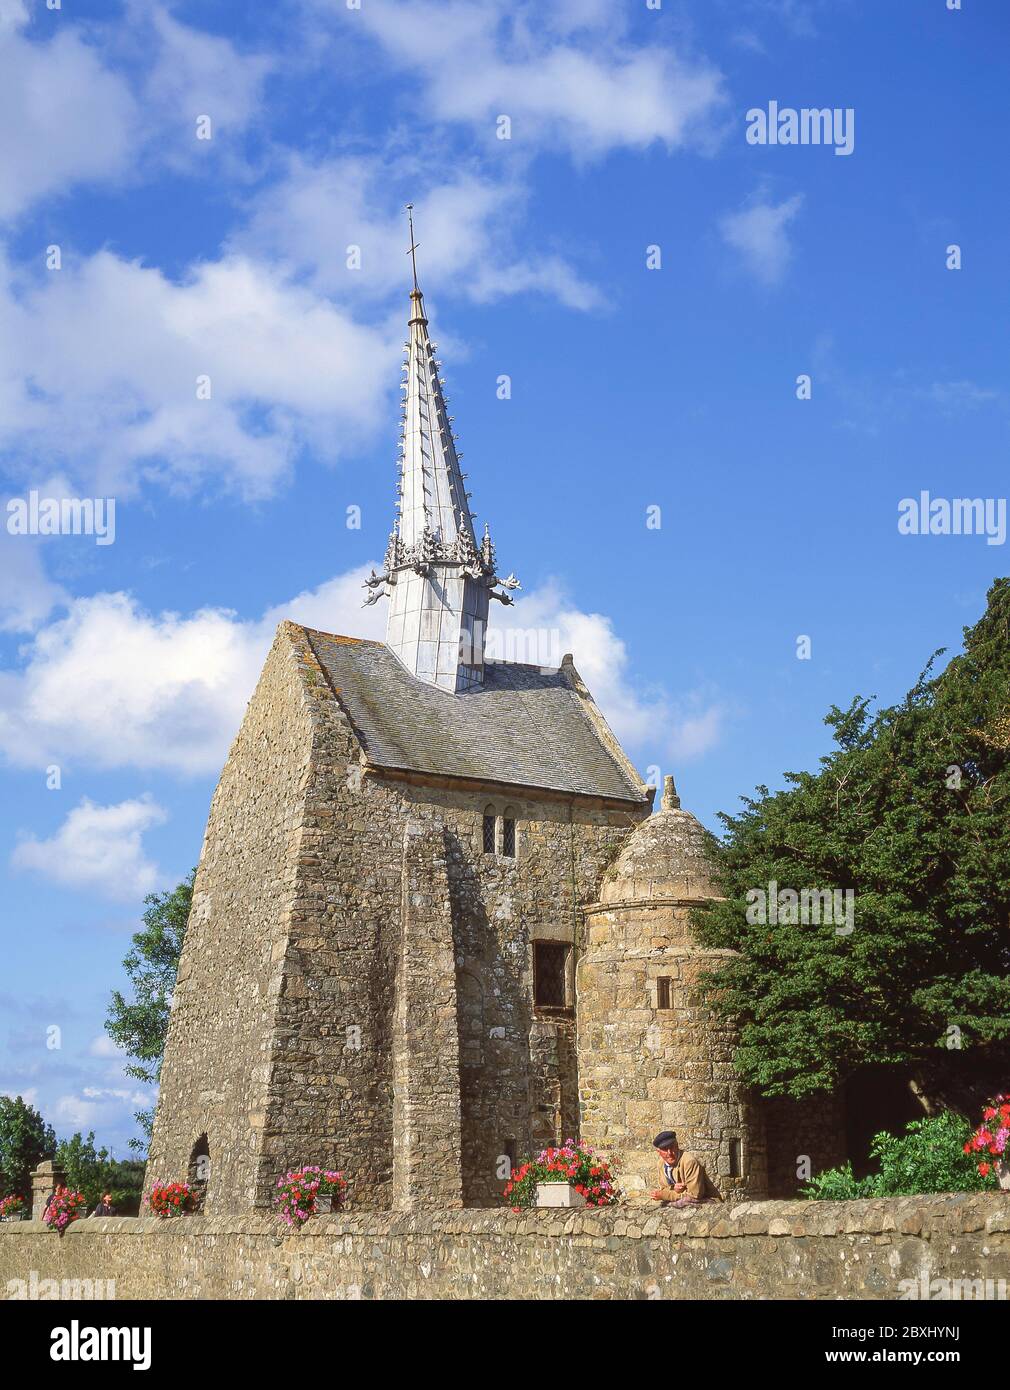 La Chapelle Saint Gonery, Plougrescant (Plougouskant), Côtes-d'Armor, Brittany, France Stock Photo